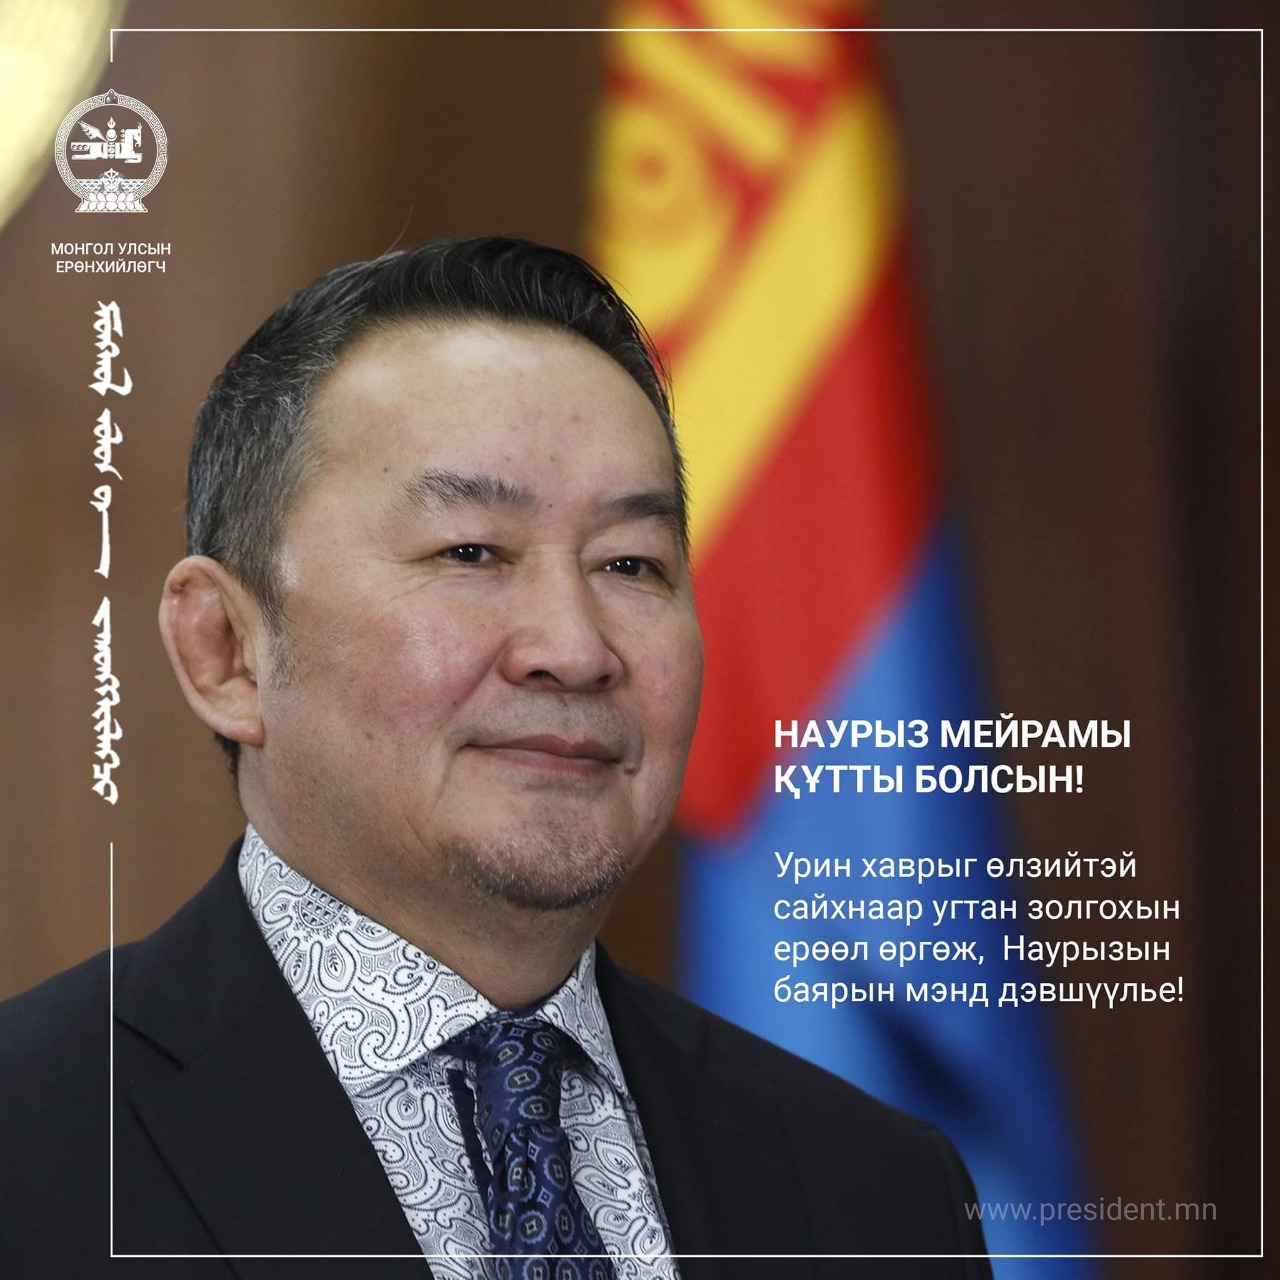 Моңғолия президенті қазақ халқын Наурыз мейрамымен құттықтады